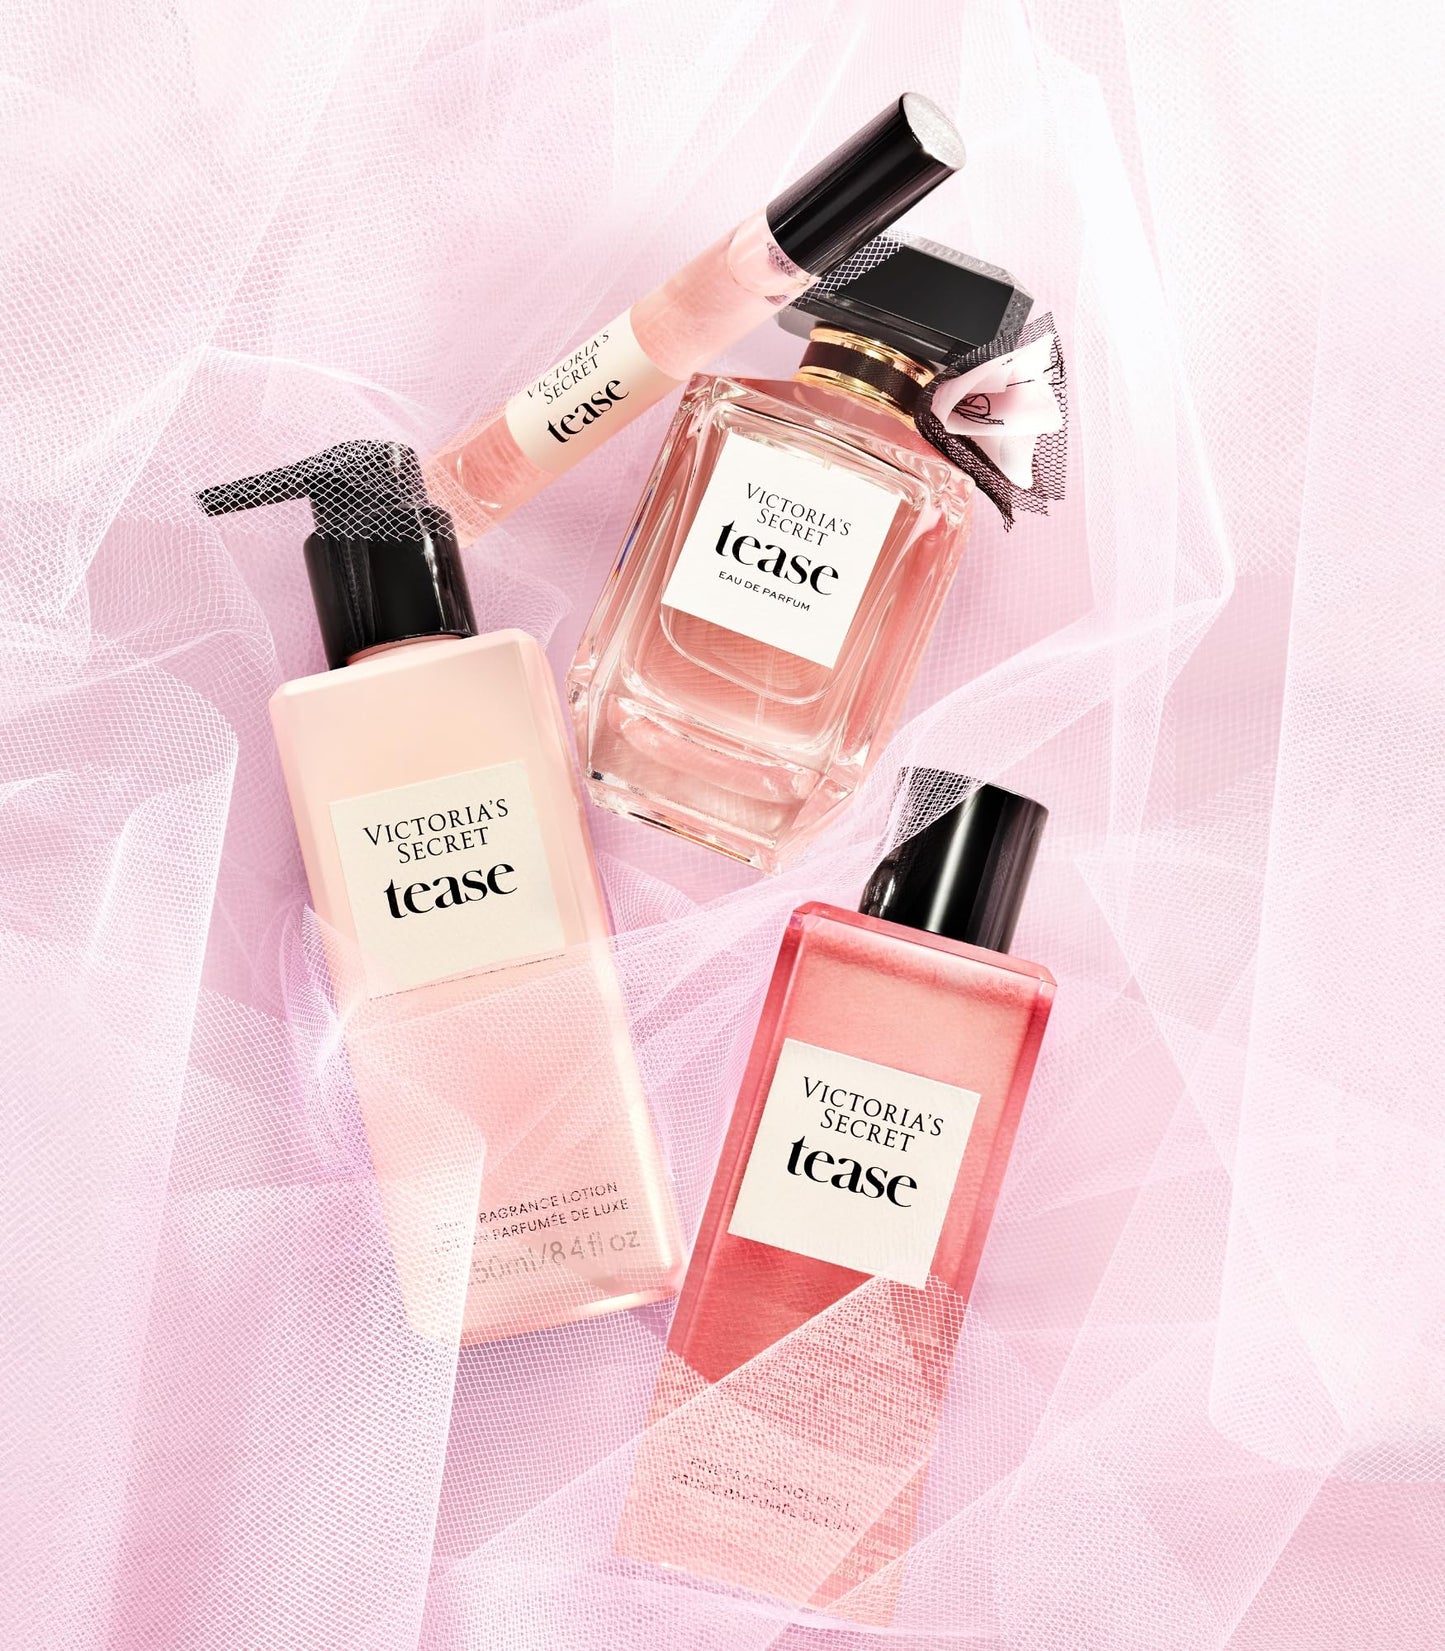 Victoria's Secret Tease Ultimate Fragrance 5 Piece Gift Set: 3.4oz Eau de Parfum, Mini Eau de Parfum, Candle, Lotion & Wash